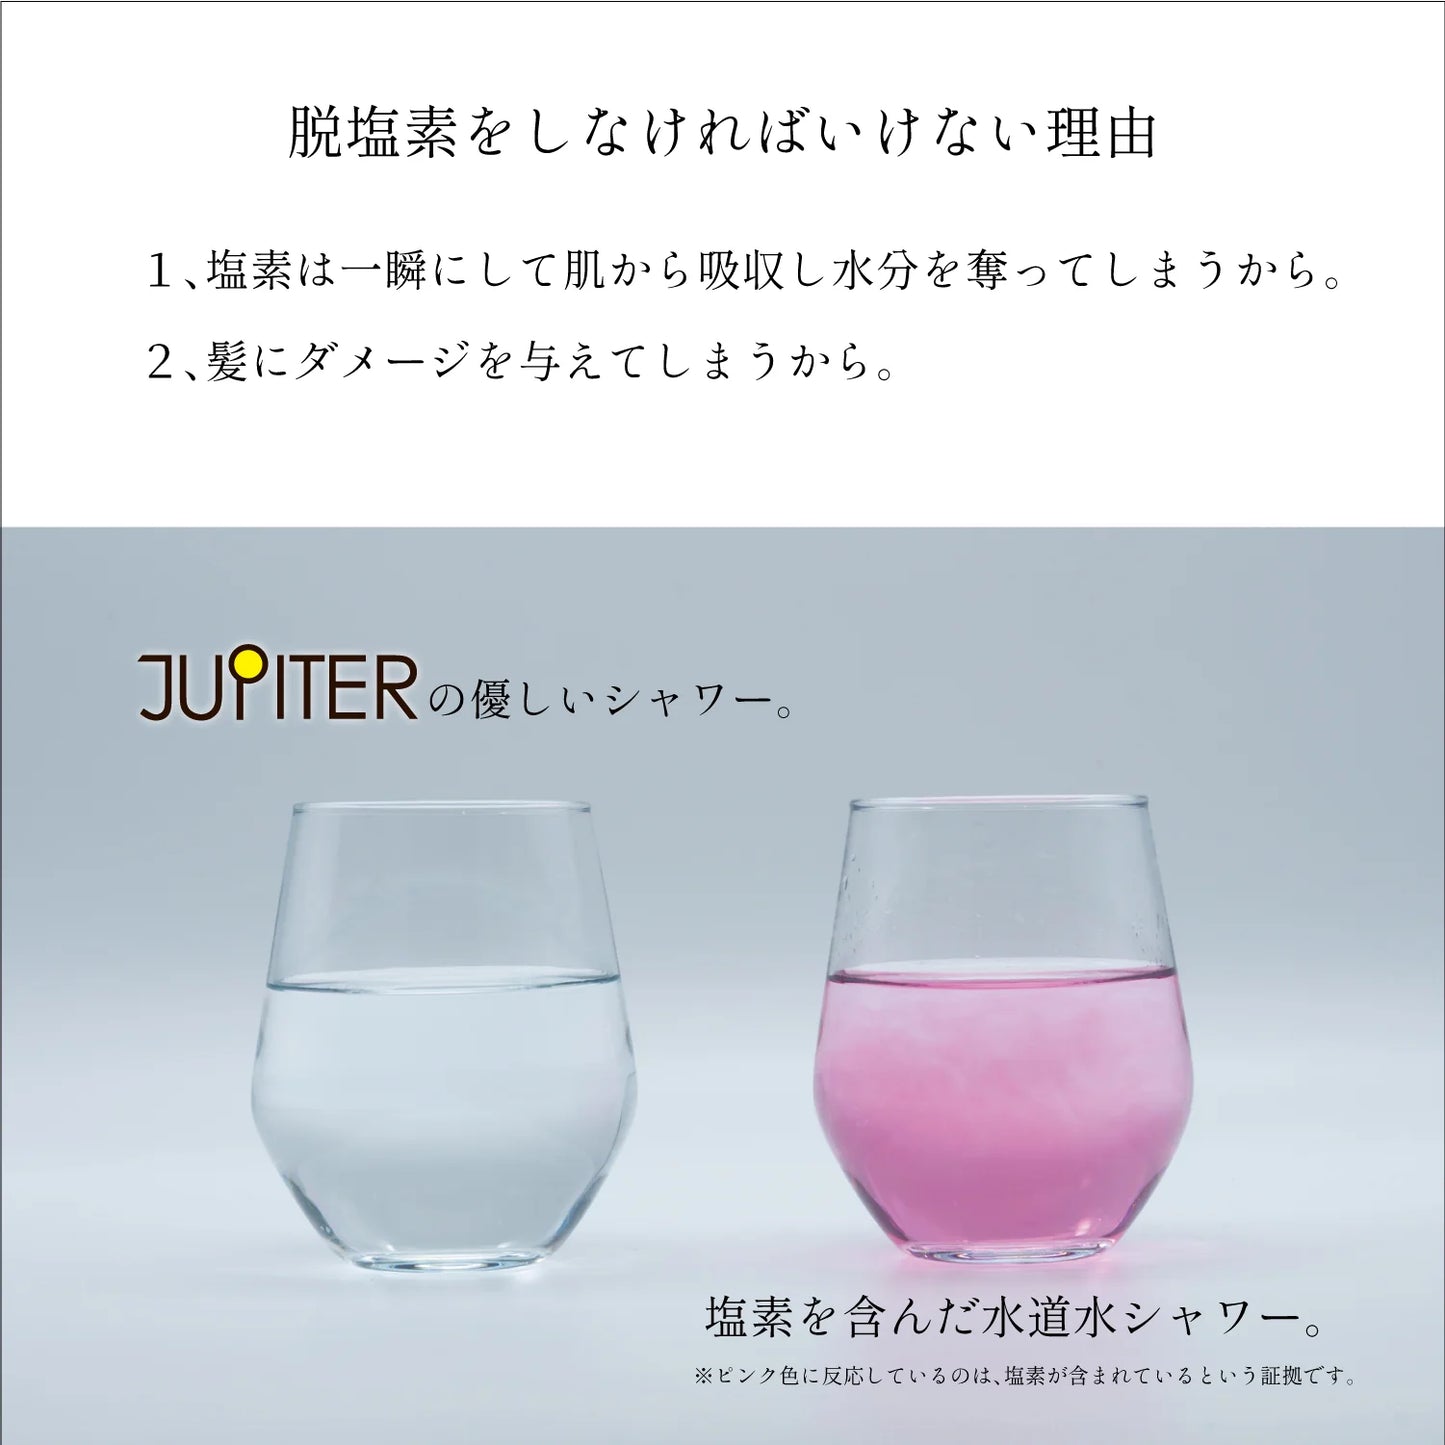 カートリッジ定期購入でJUPITER本体無料【JUPITER】